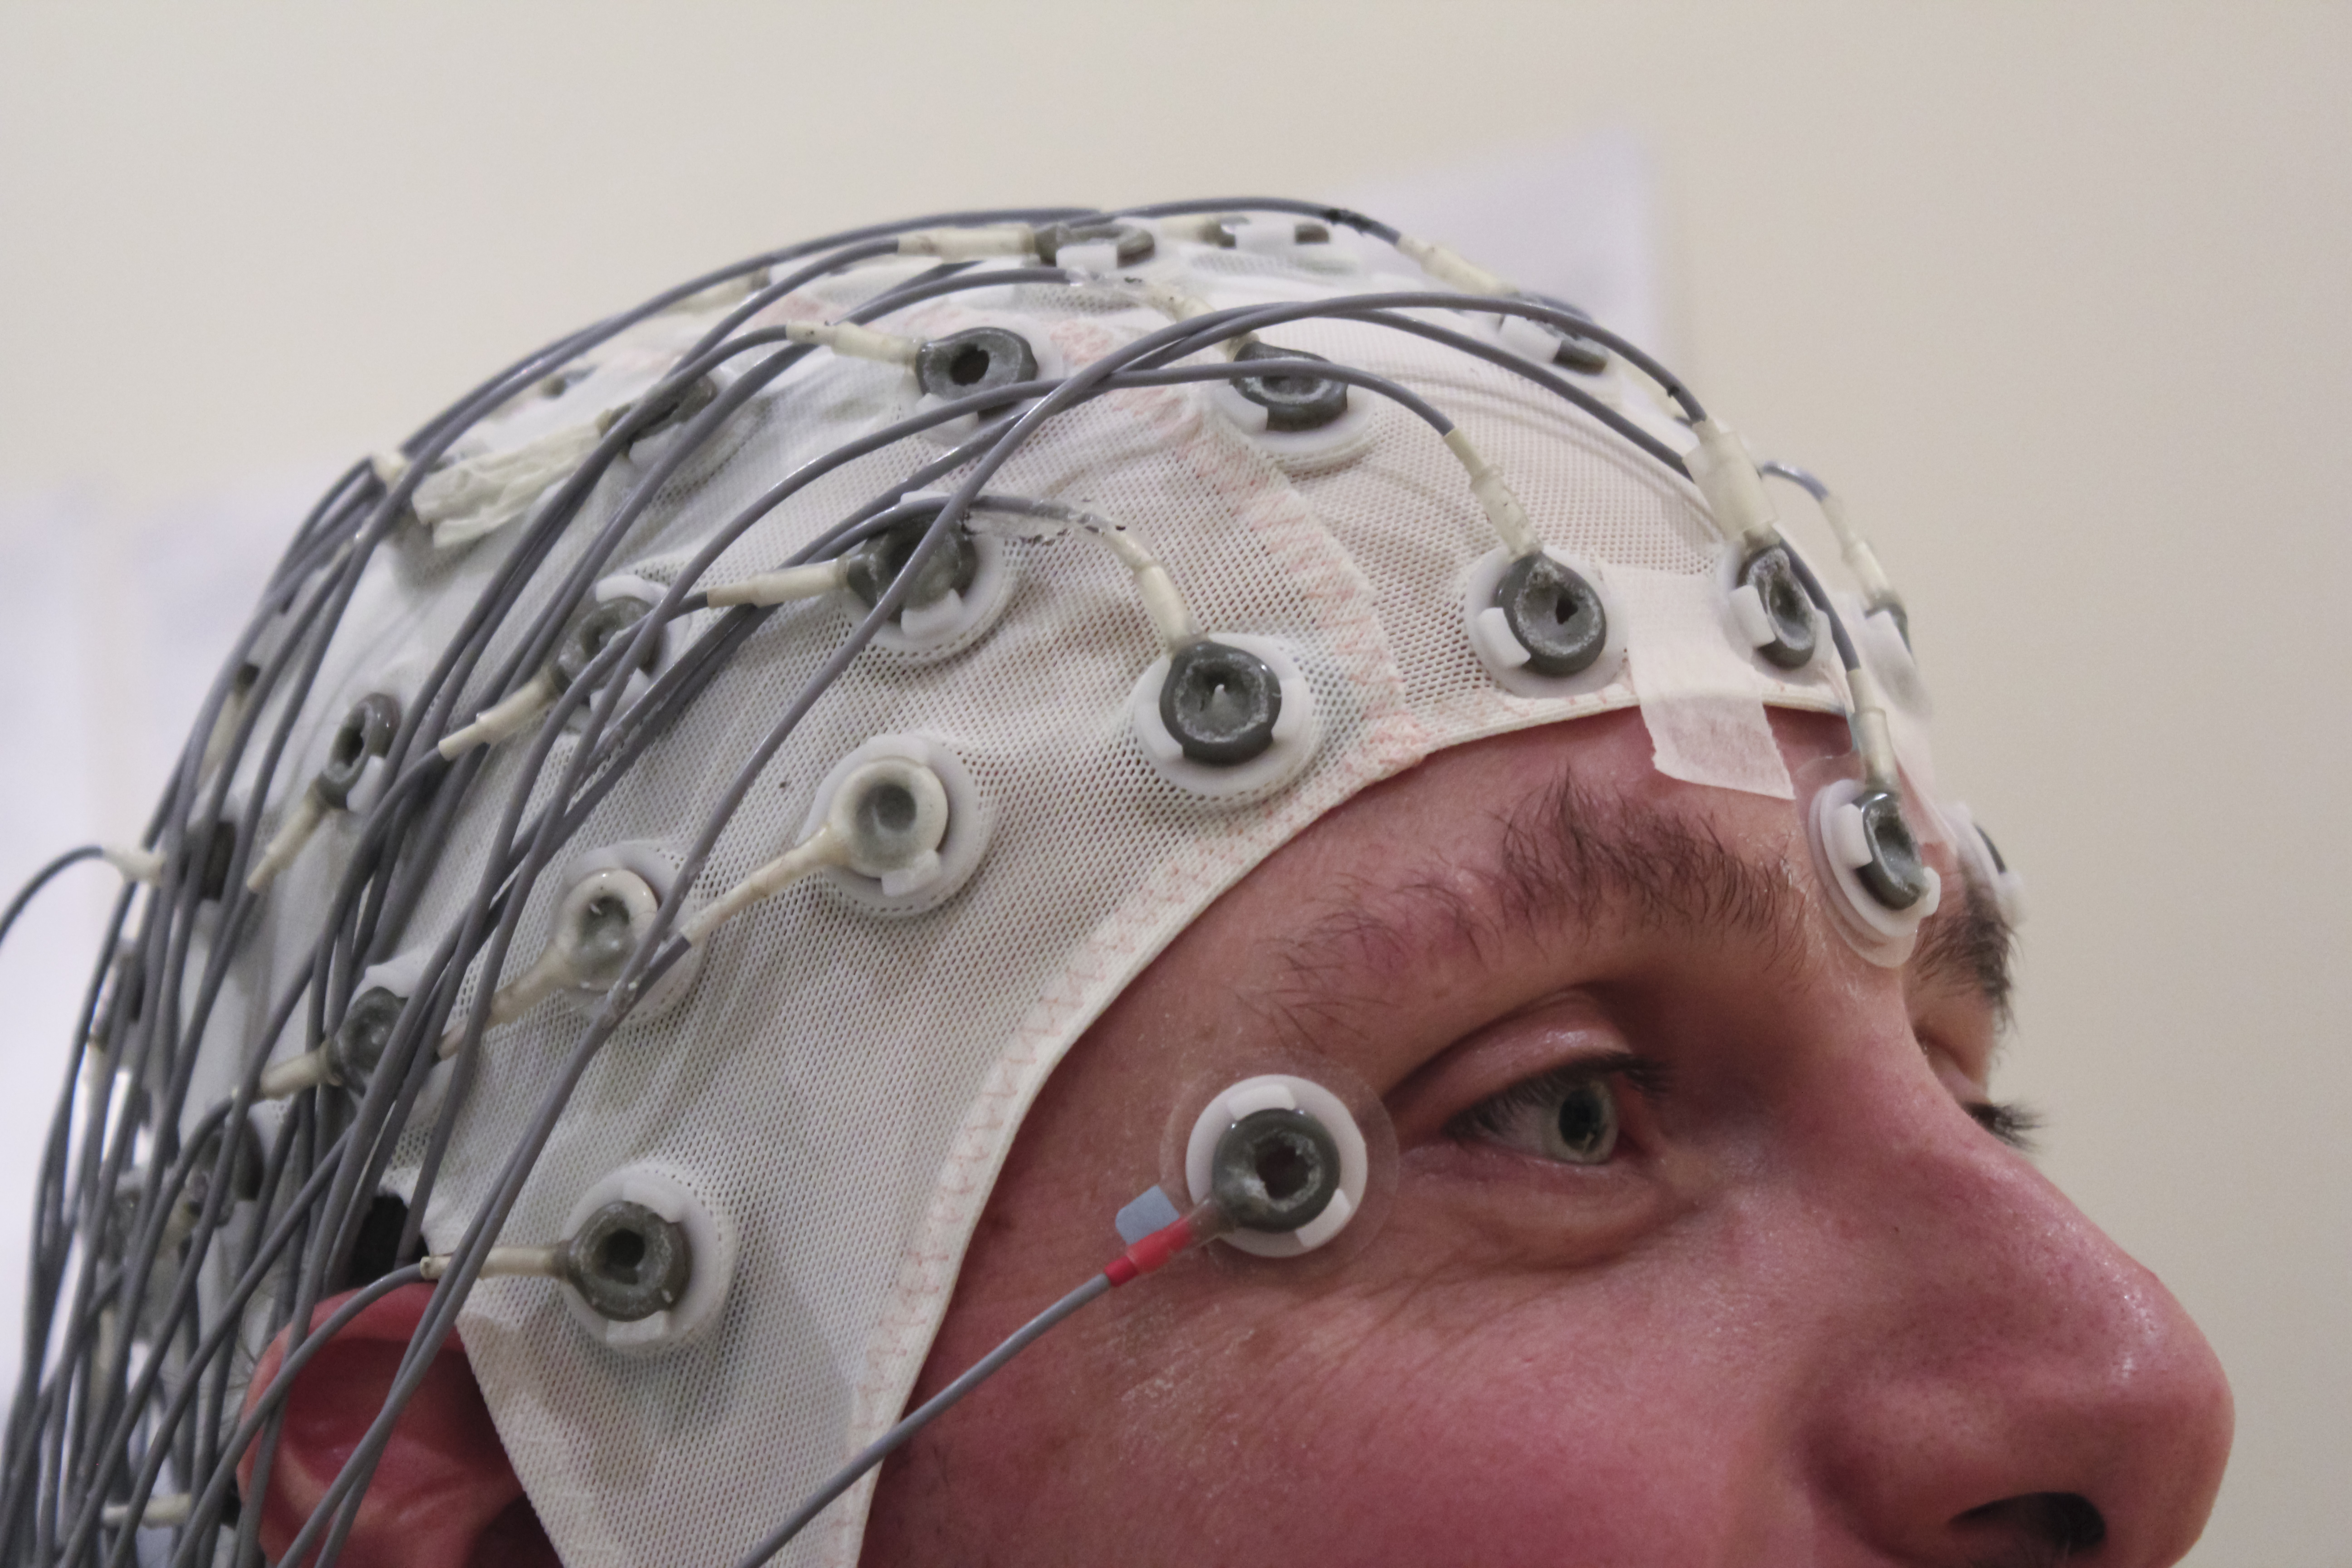 Advanced EEG course